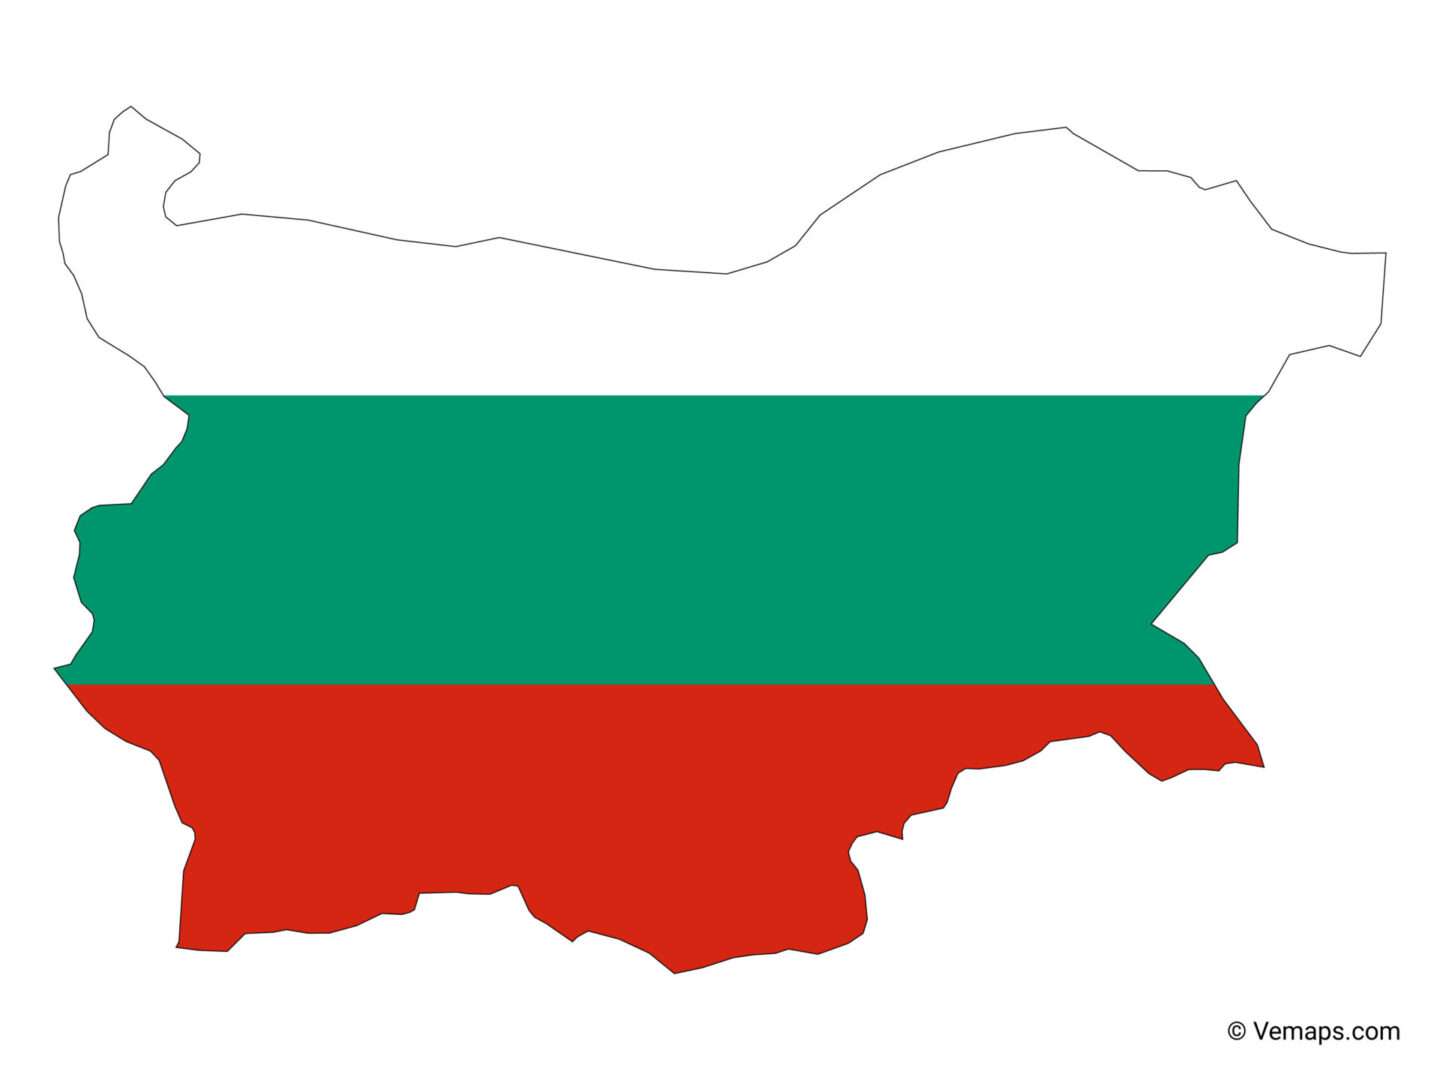 bulgaria-icon